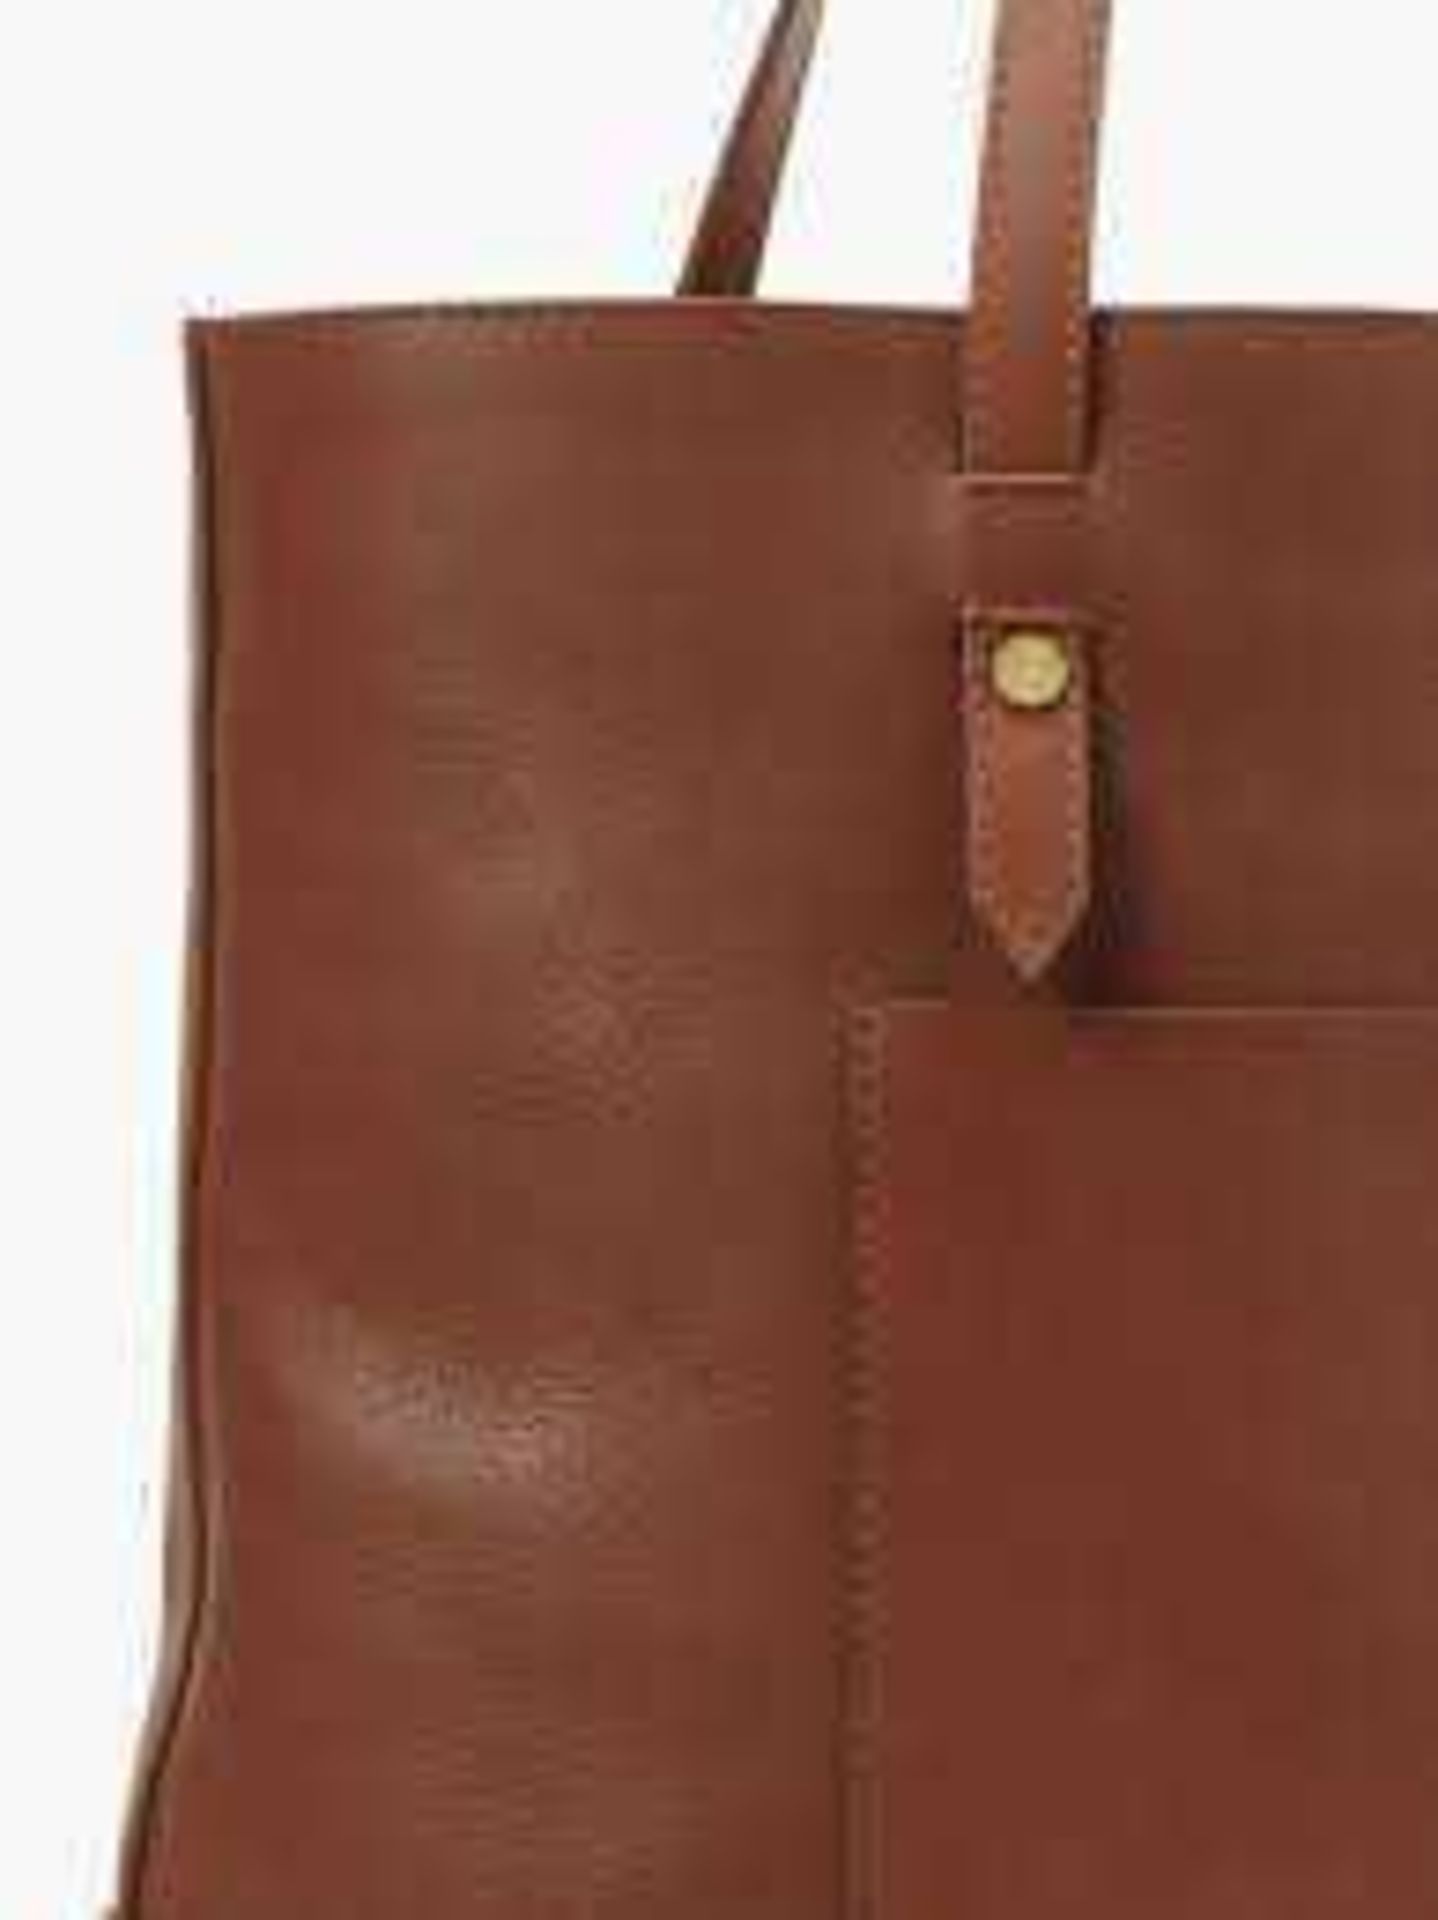 RRP £100 Unbagged John Lewis Ladies Leather Work Tote Handbag In Colour Tan